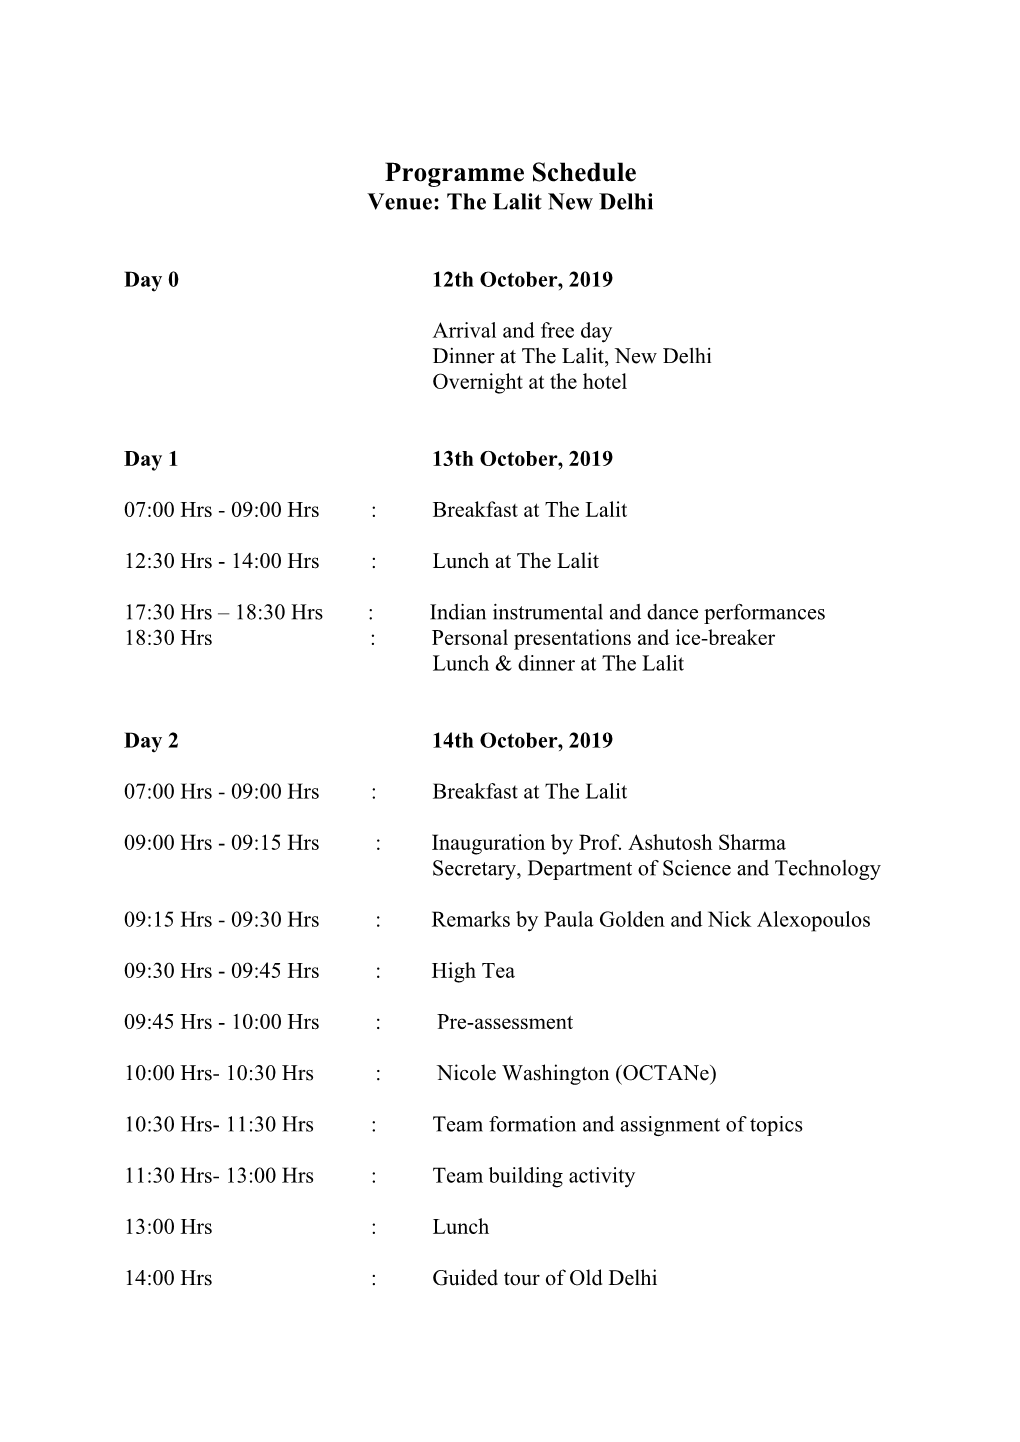 Programme Schedule Venue: the Lalit New Delhi